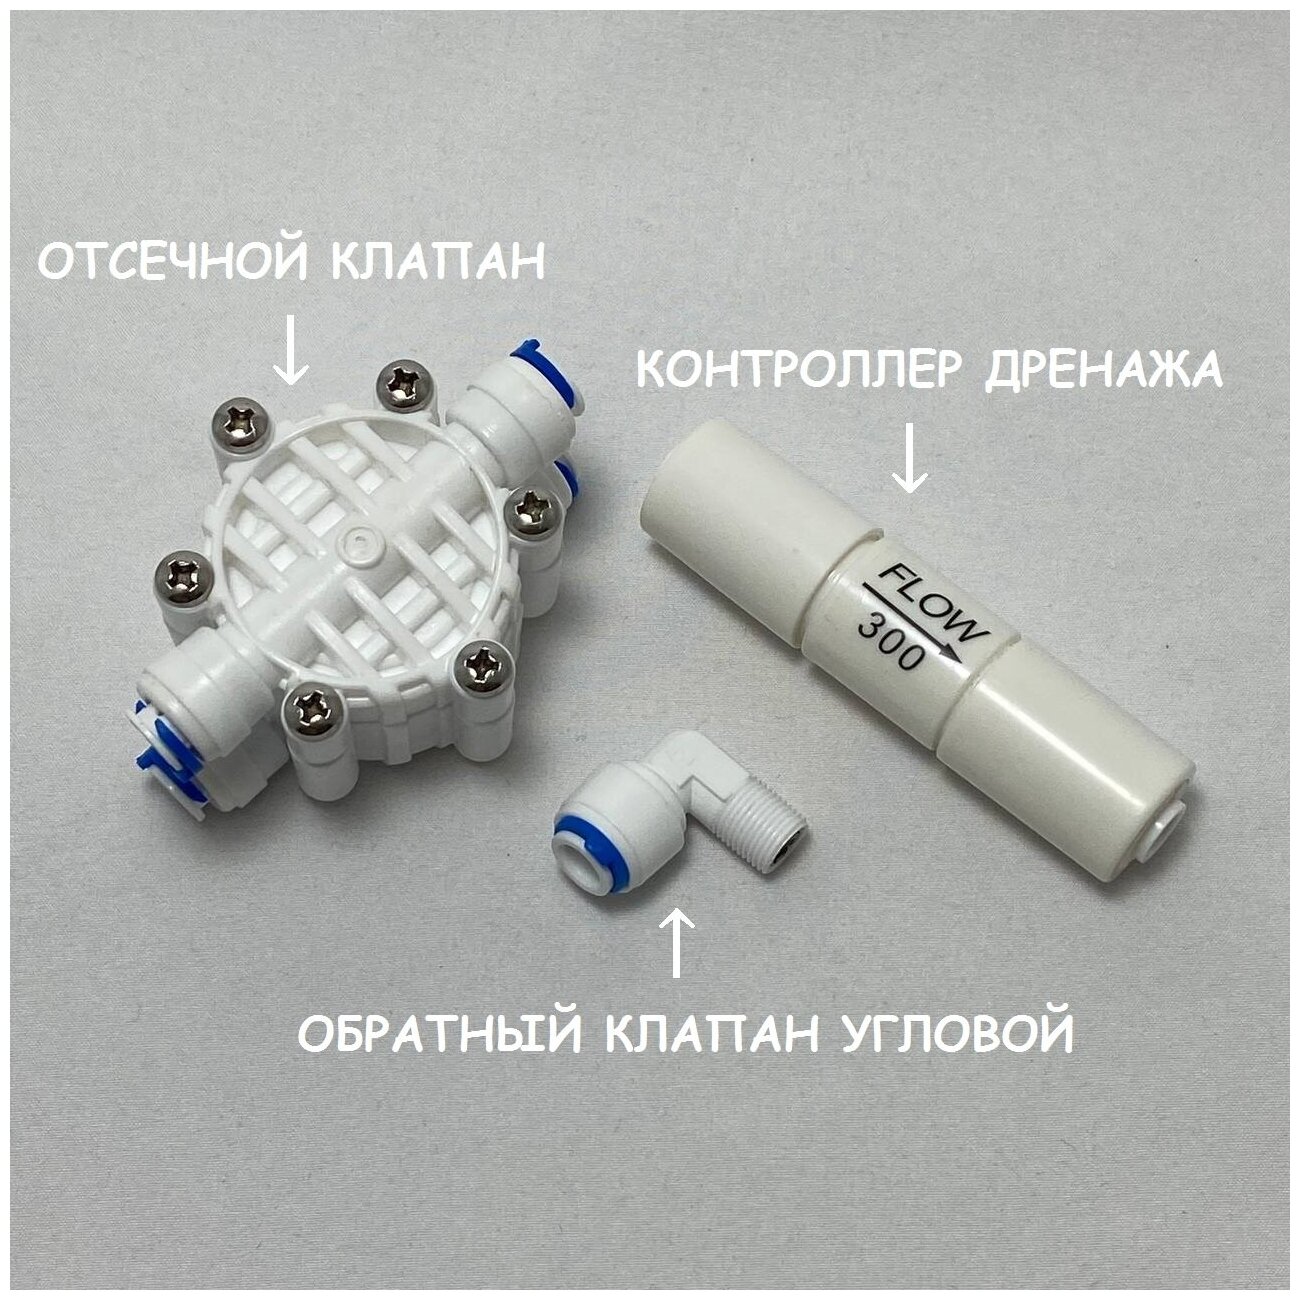 Набор запчастей для фильтра обратного осмоса UFAFILTER (Отсечной клапан контроллер дренажа 300 мл/мин обратный клапан угловой)